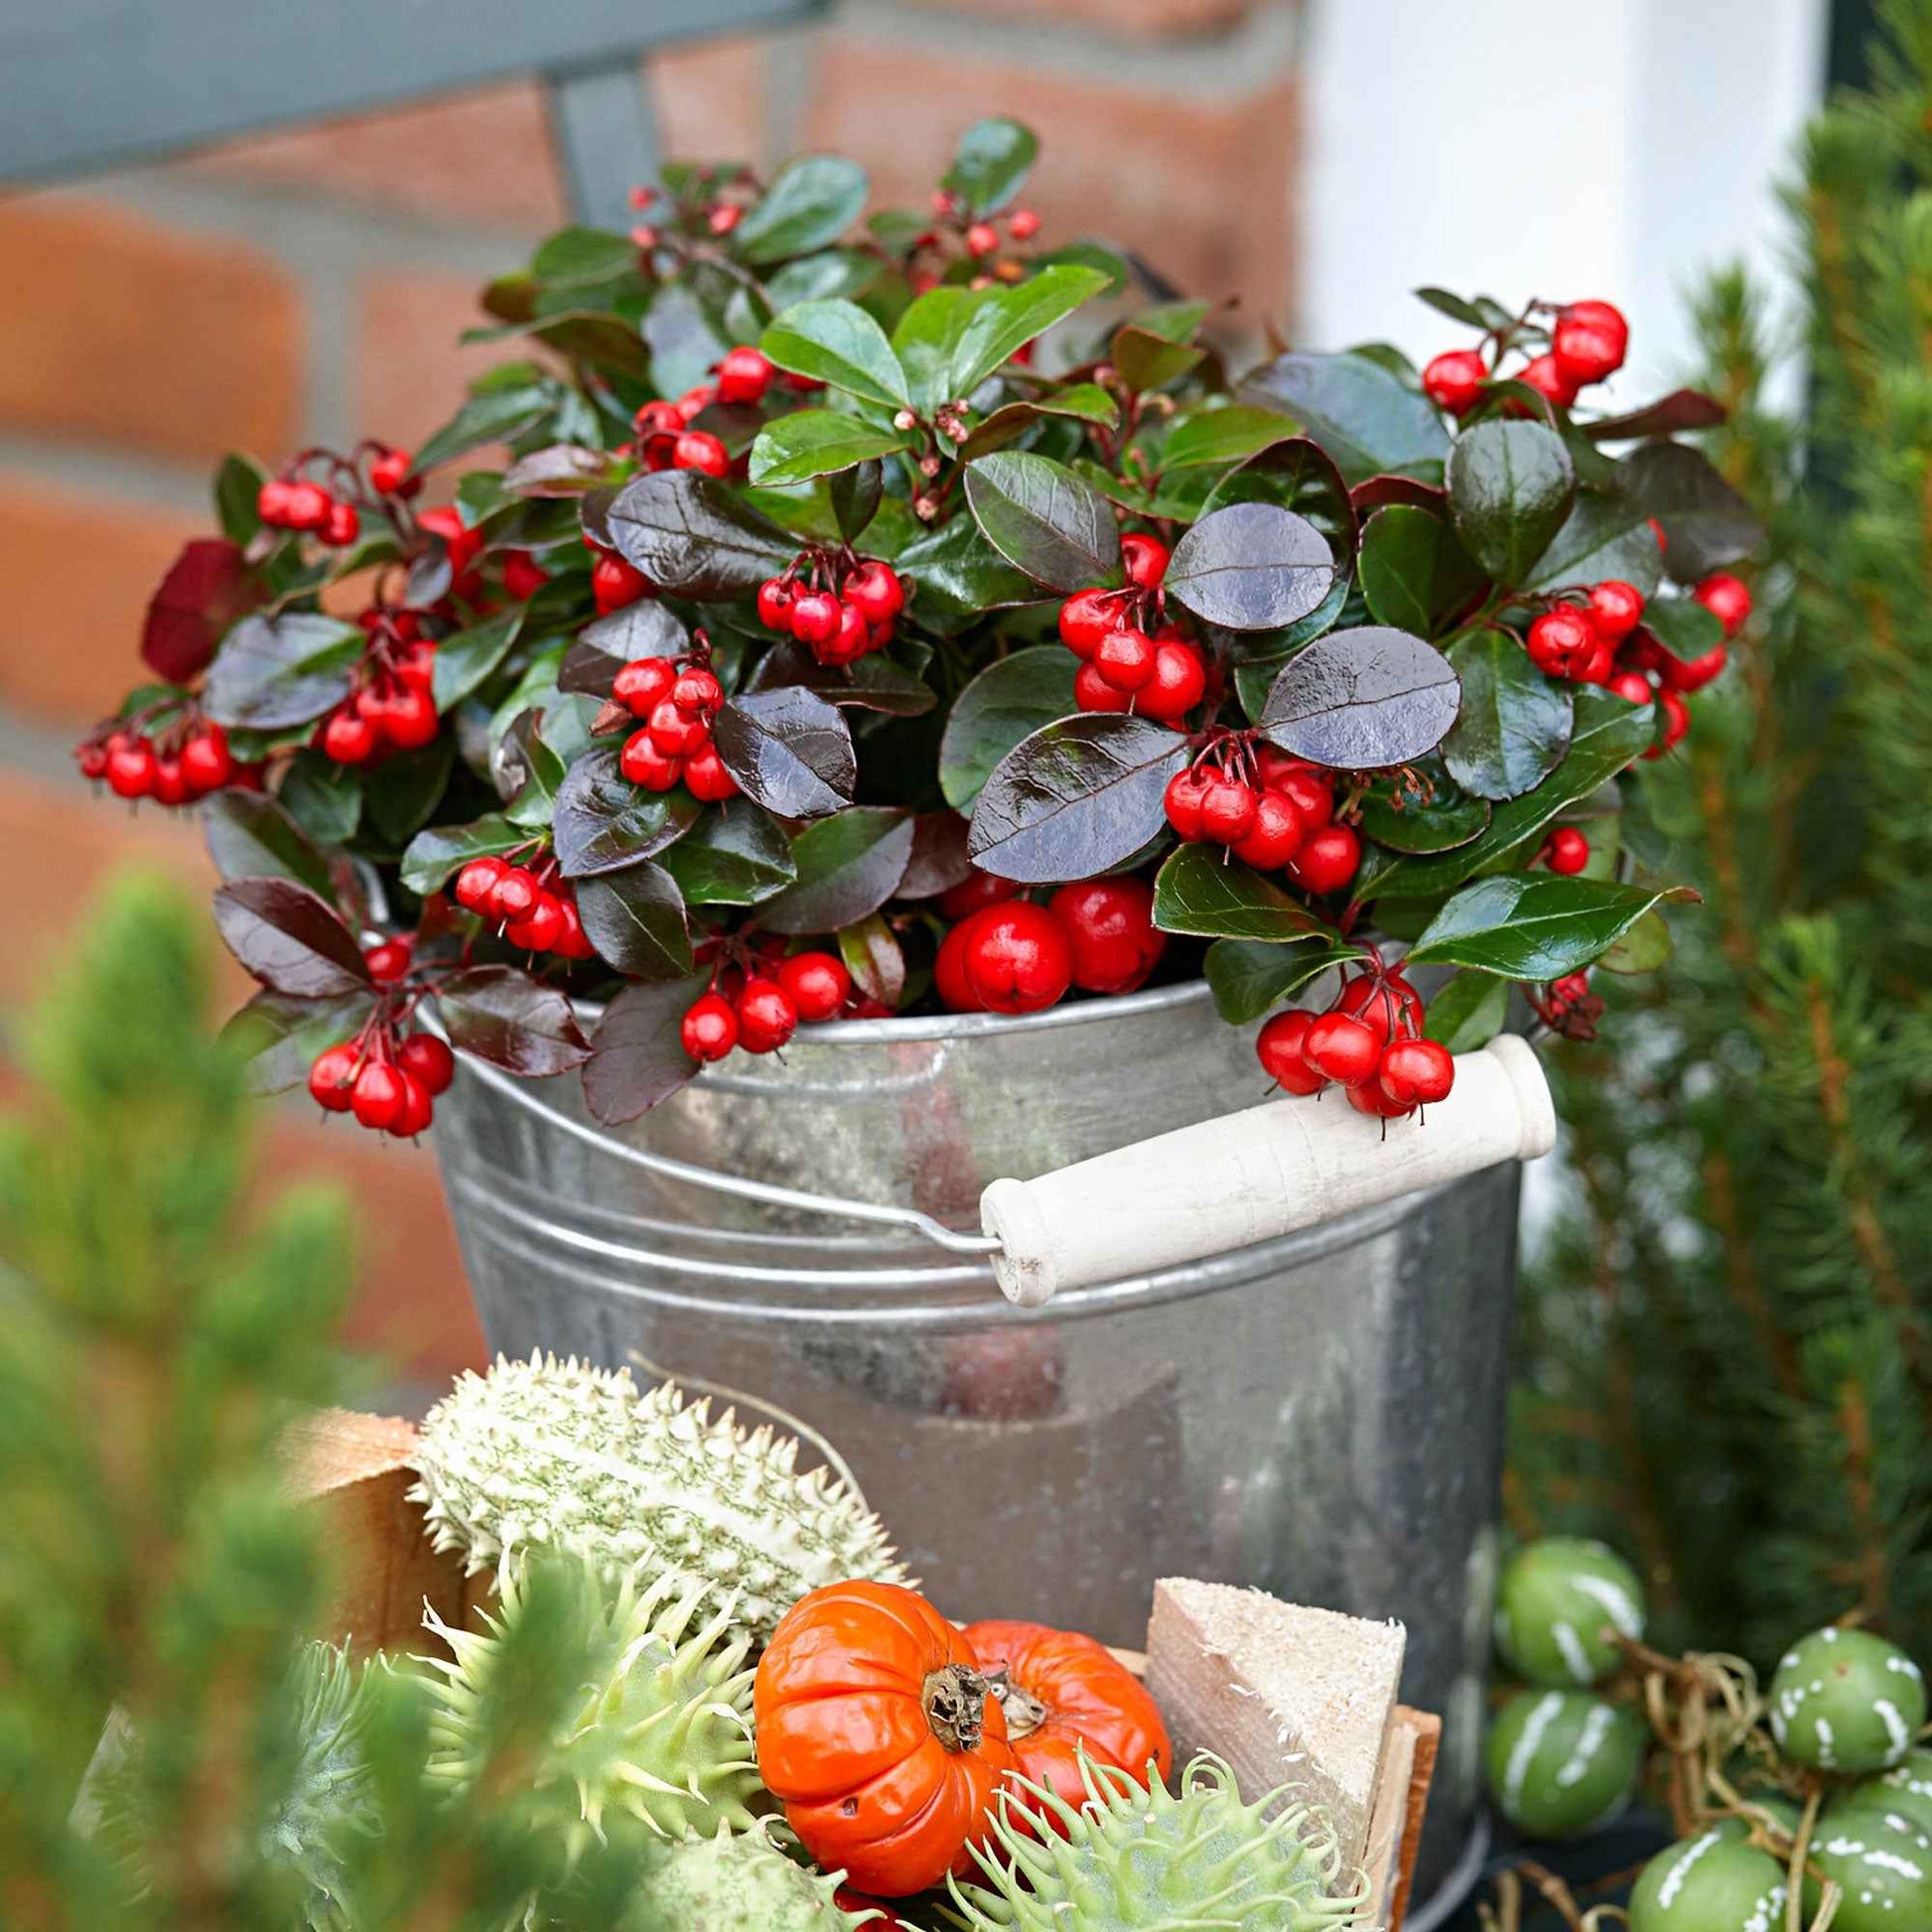 6x Niedere scheinbeere Gaultheria 'Big Berry' Rot inkl. Weidenkorb grau - Winterhart - Blühende Gartenpflanzen